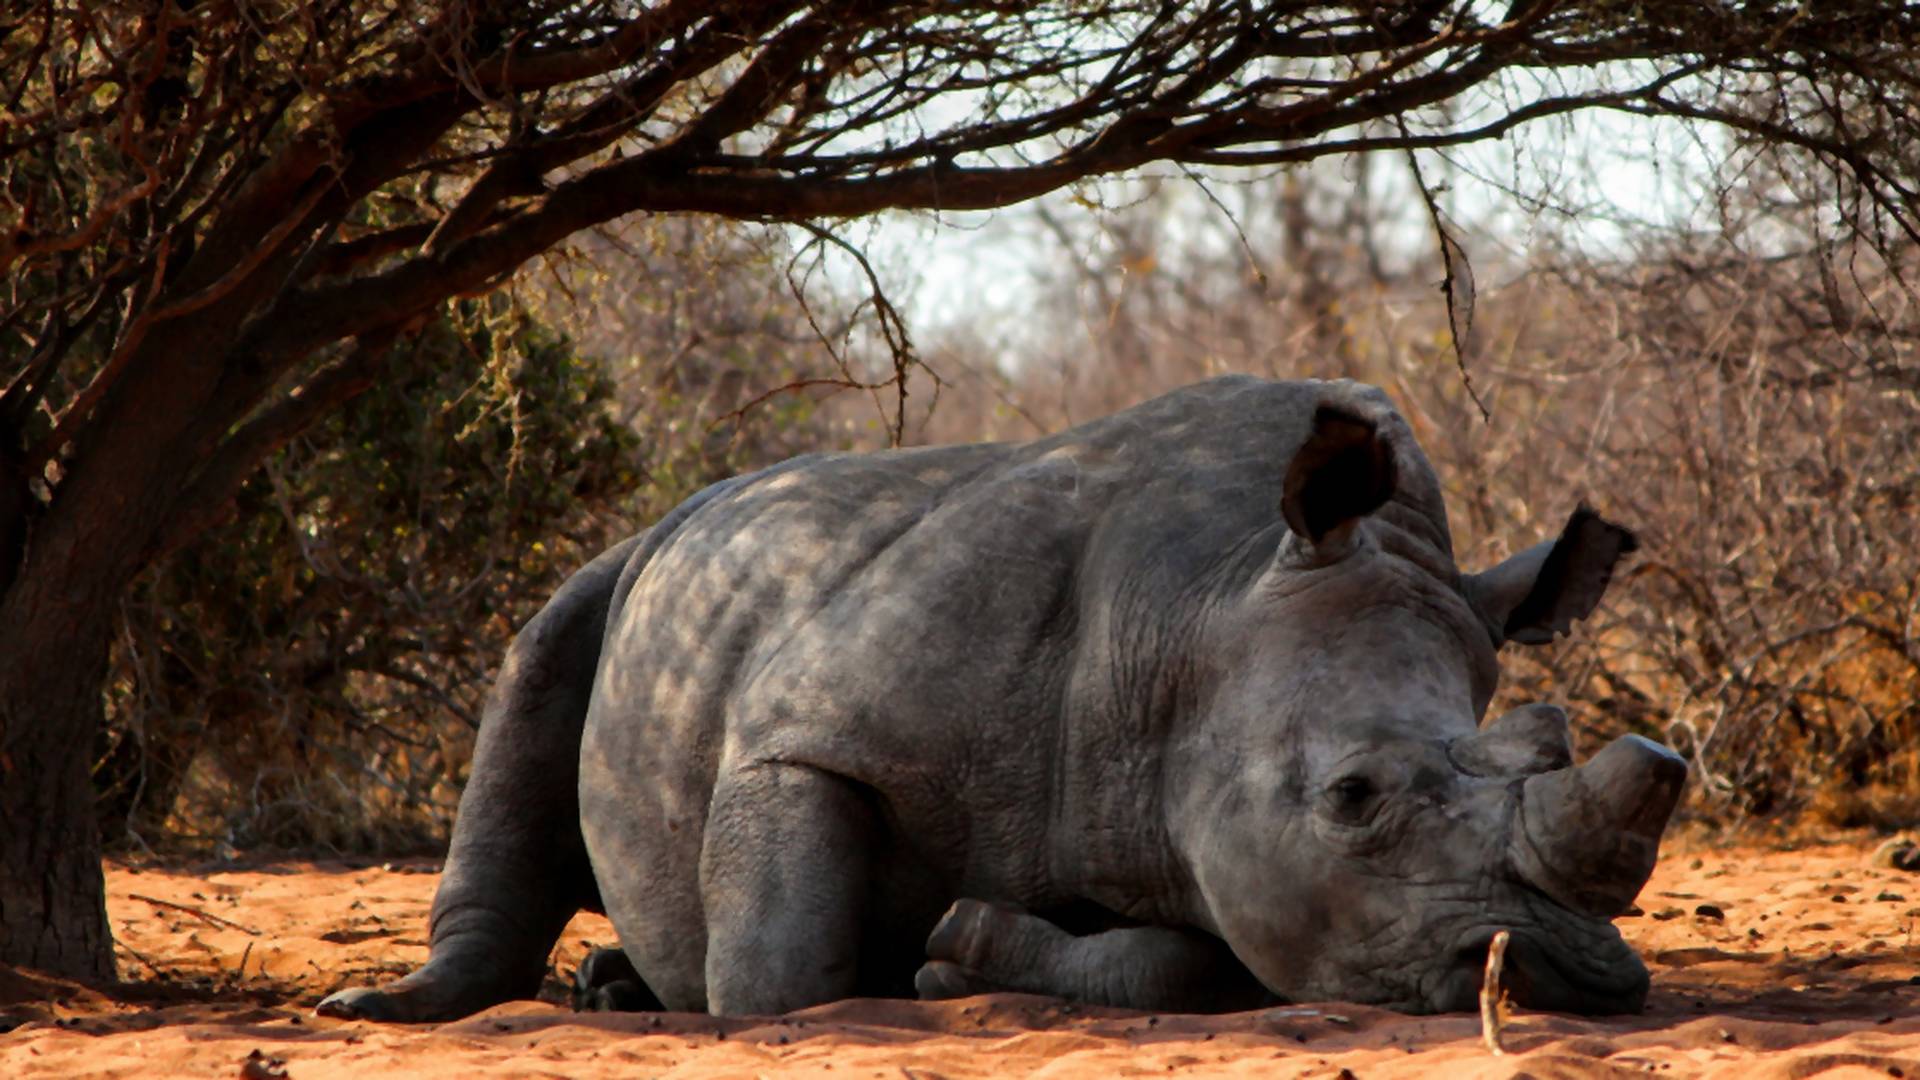 Zomrel posledný malajzijský nosorožec. Celému druhu hrozí vyhynutie